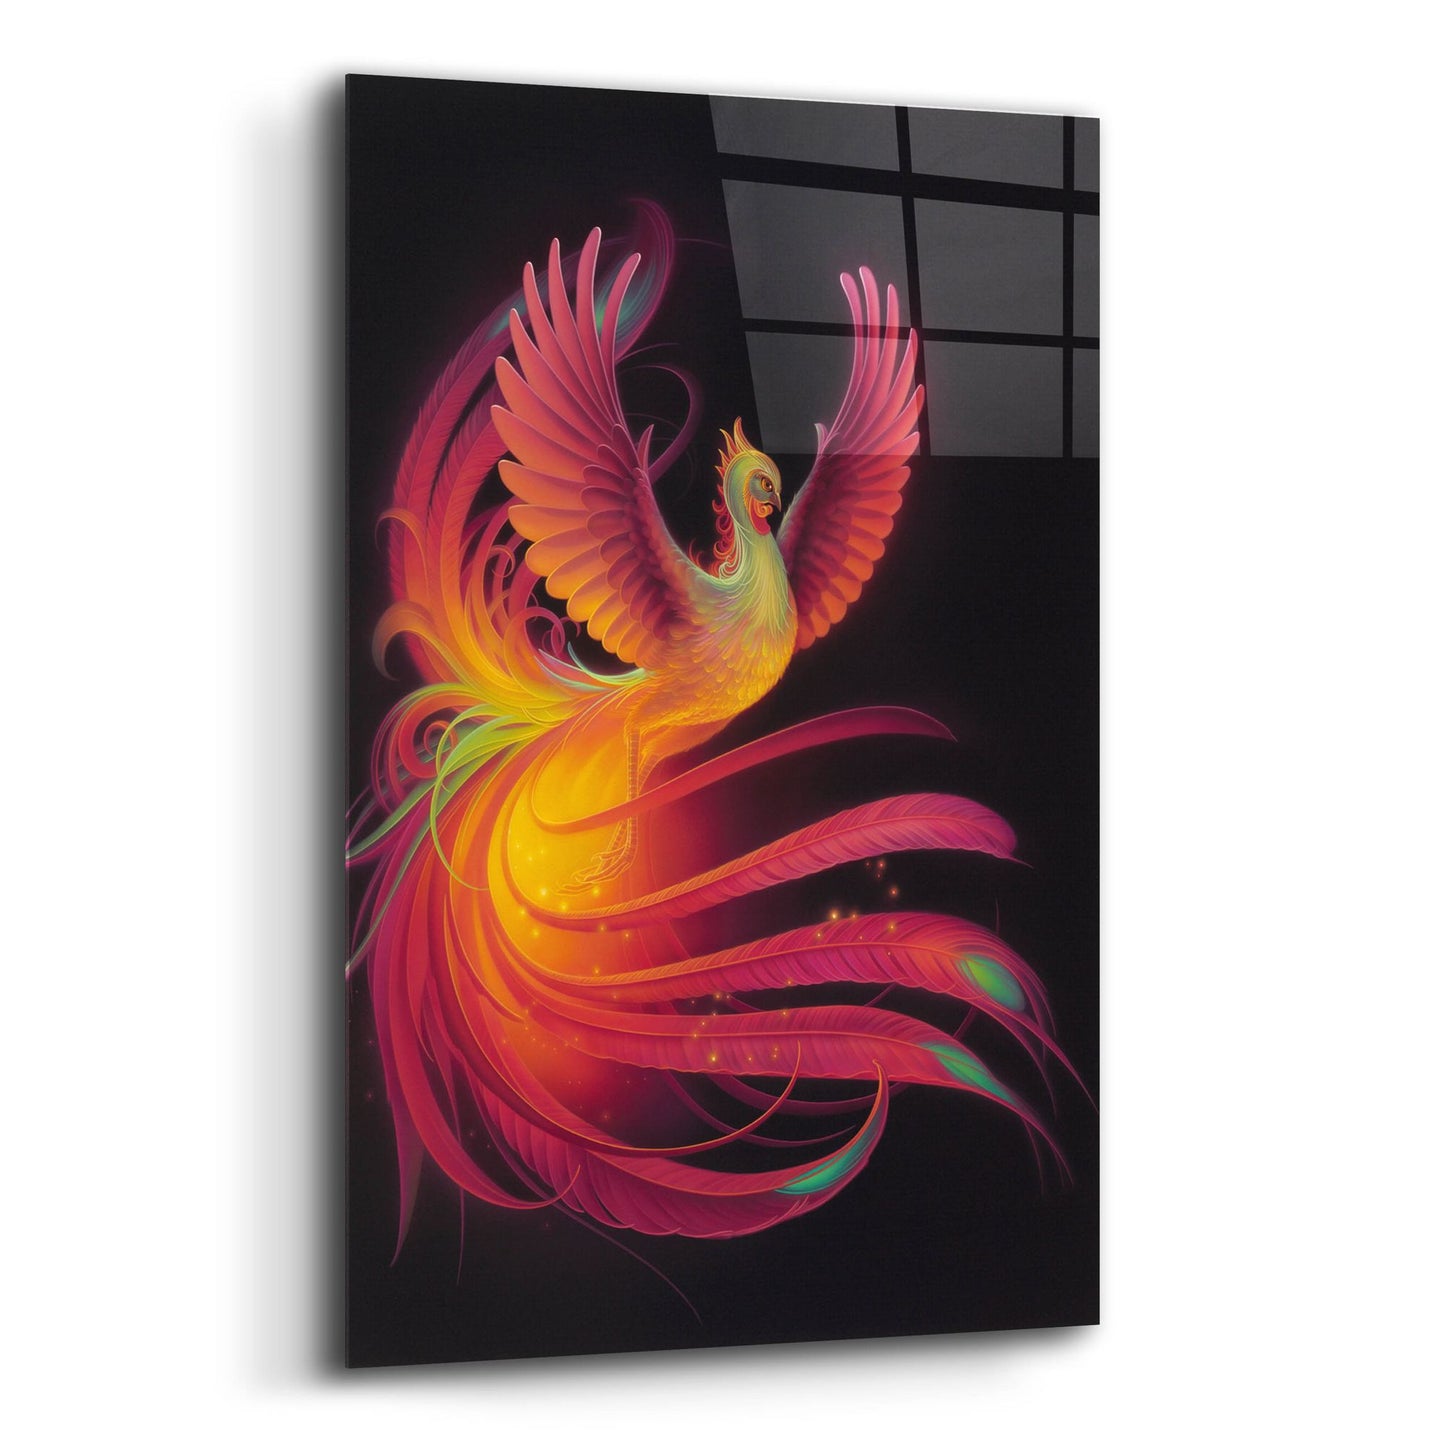 Epic Art 'Phoenix' by Kirk Reinert, Acrylic Glass Wall Art,16x24